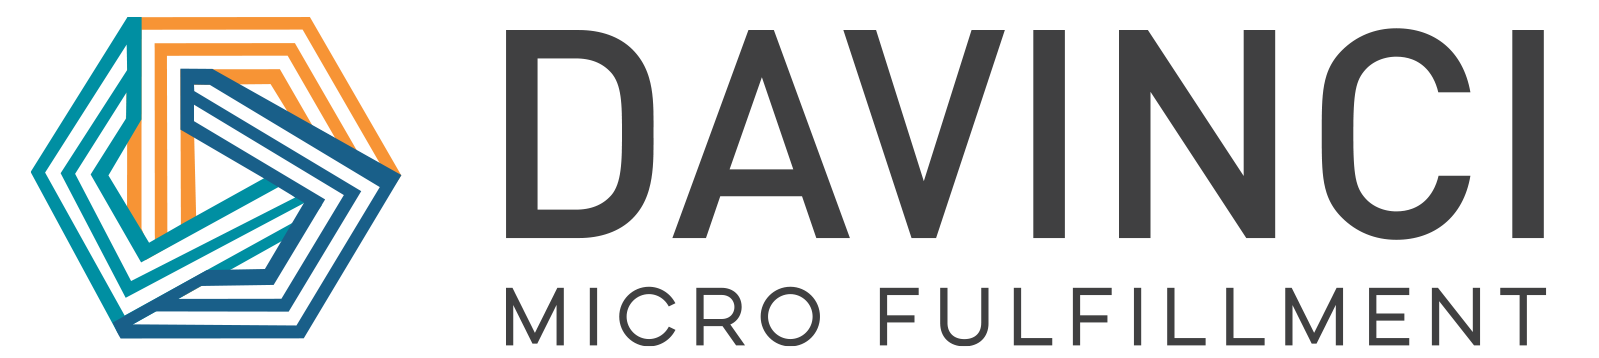 Partner with Davinci Micro Fulfillment - Walmart.com solution provider page